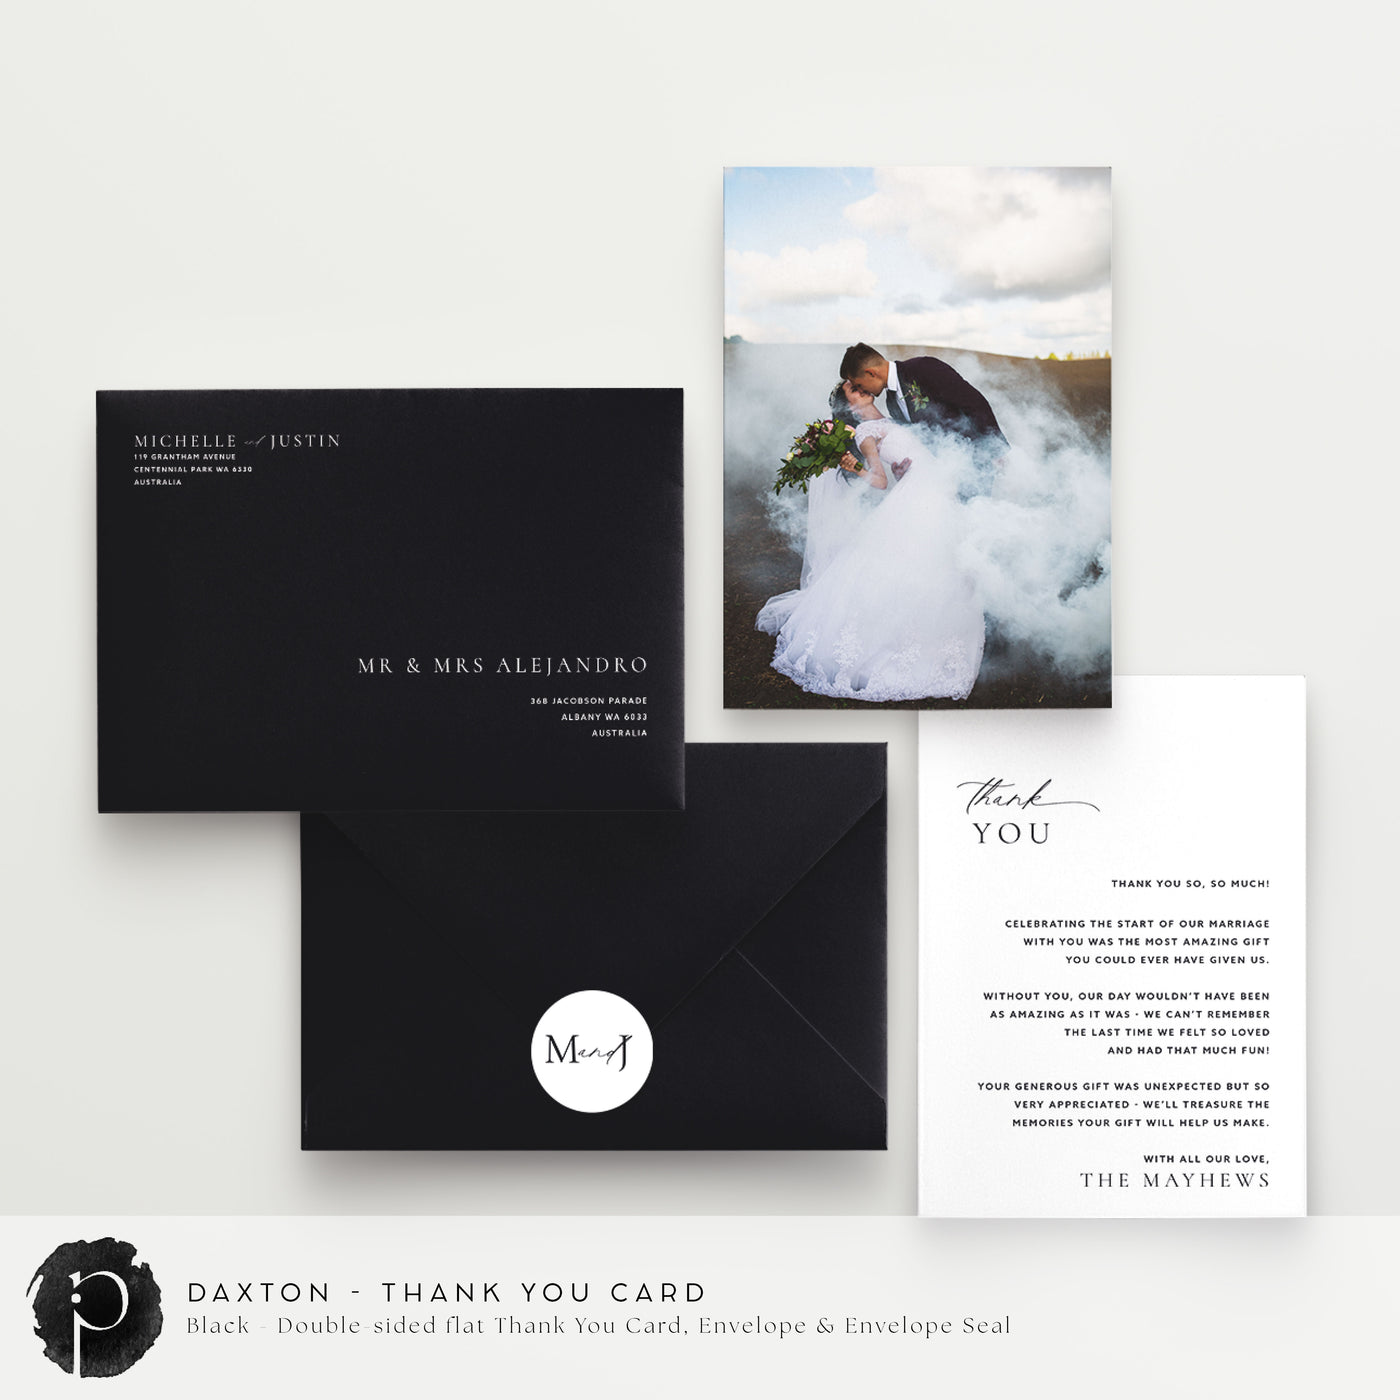 Daxton - Wedding Thank You Cards